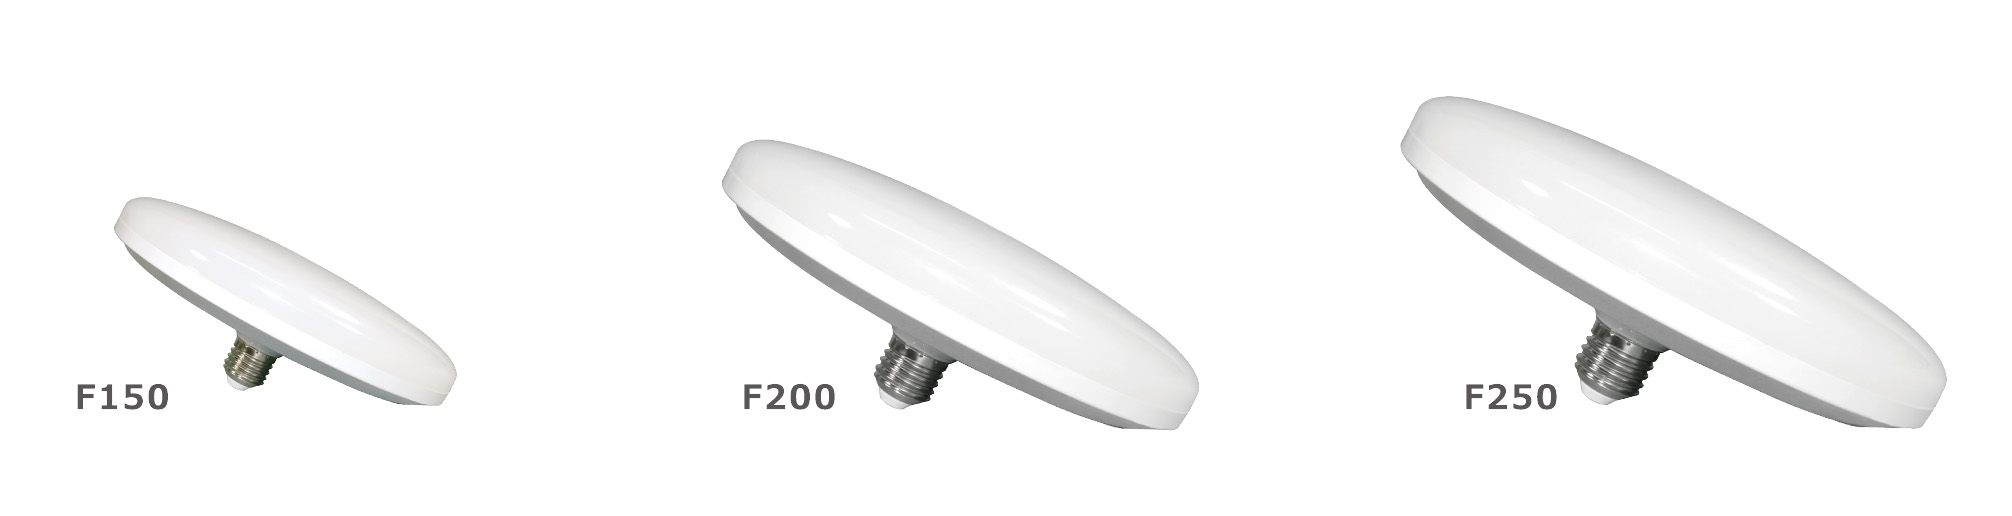 LED Bulb F250